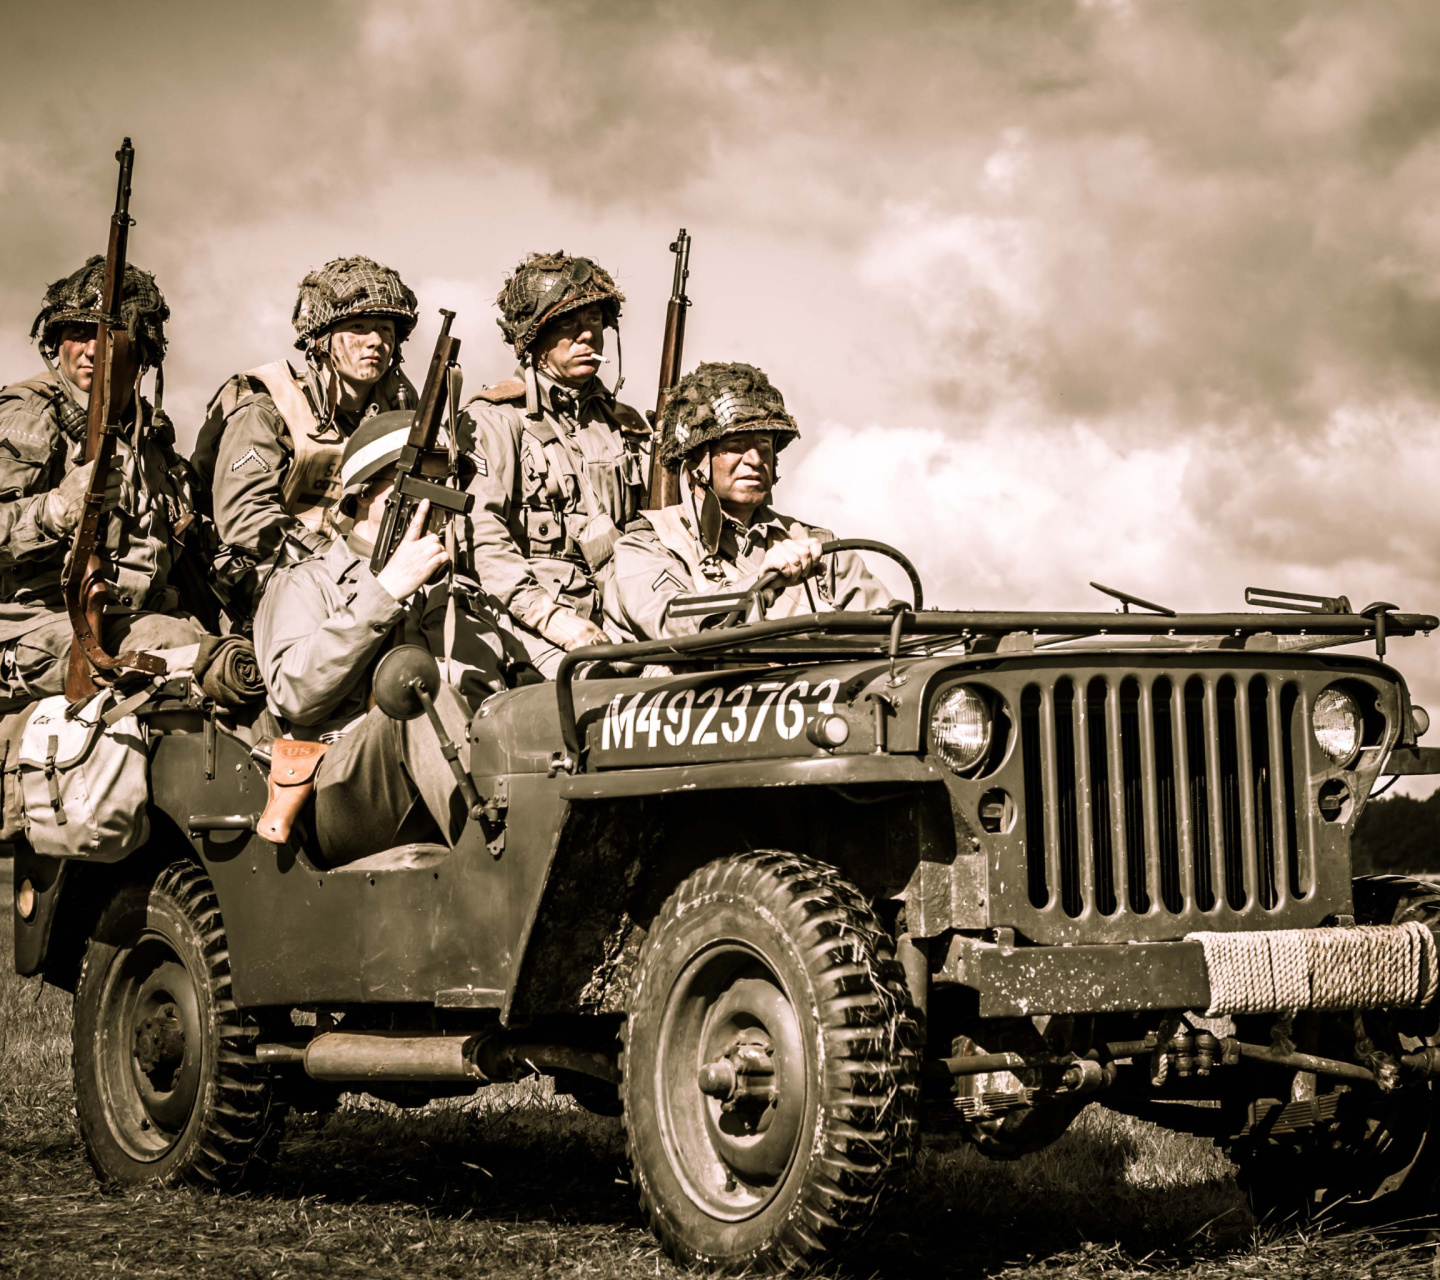 Обои Soldiers on Jeep 1440x1280